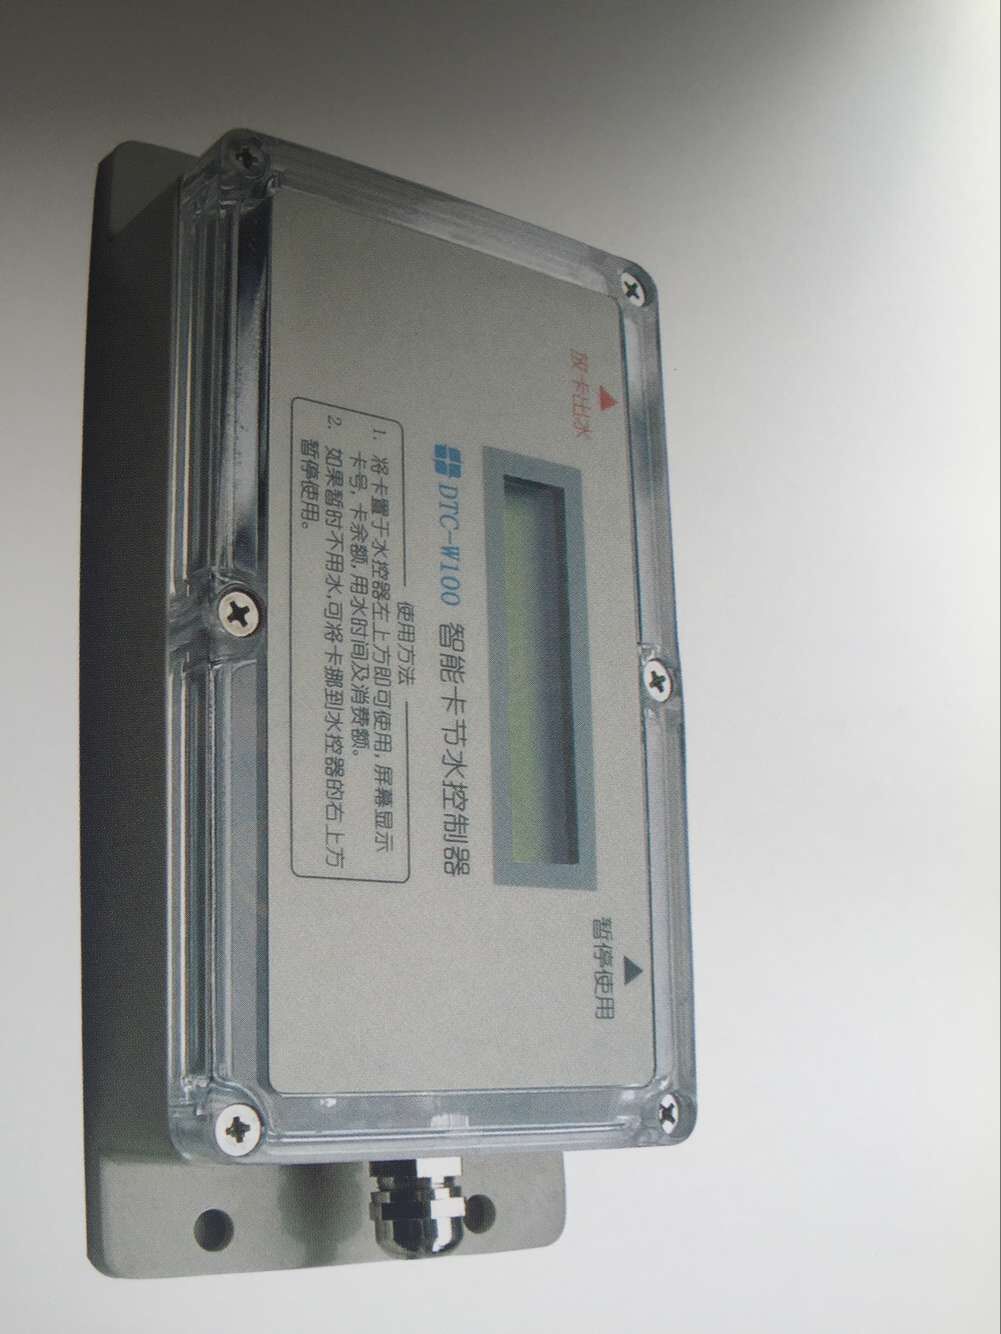 上海魅南多功能联网水控机高性能通用节水控制器收费水控机